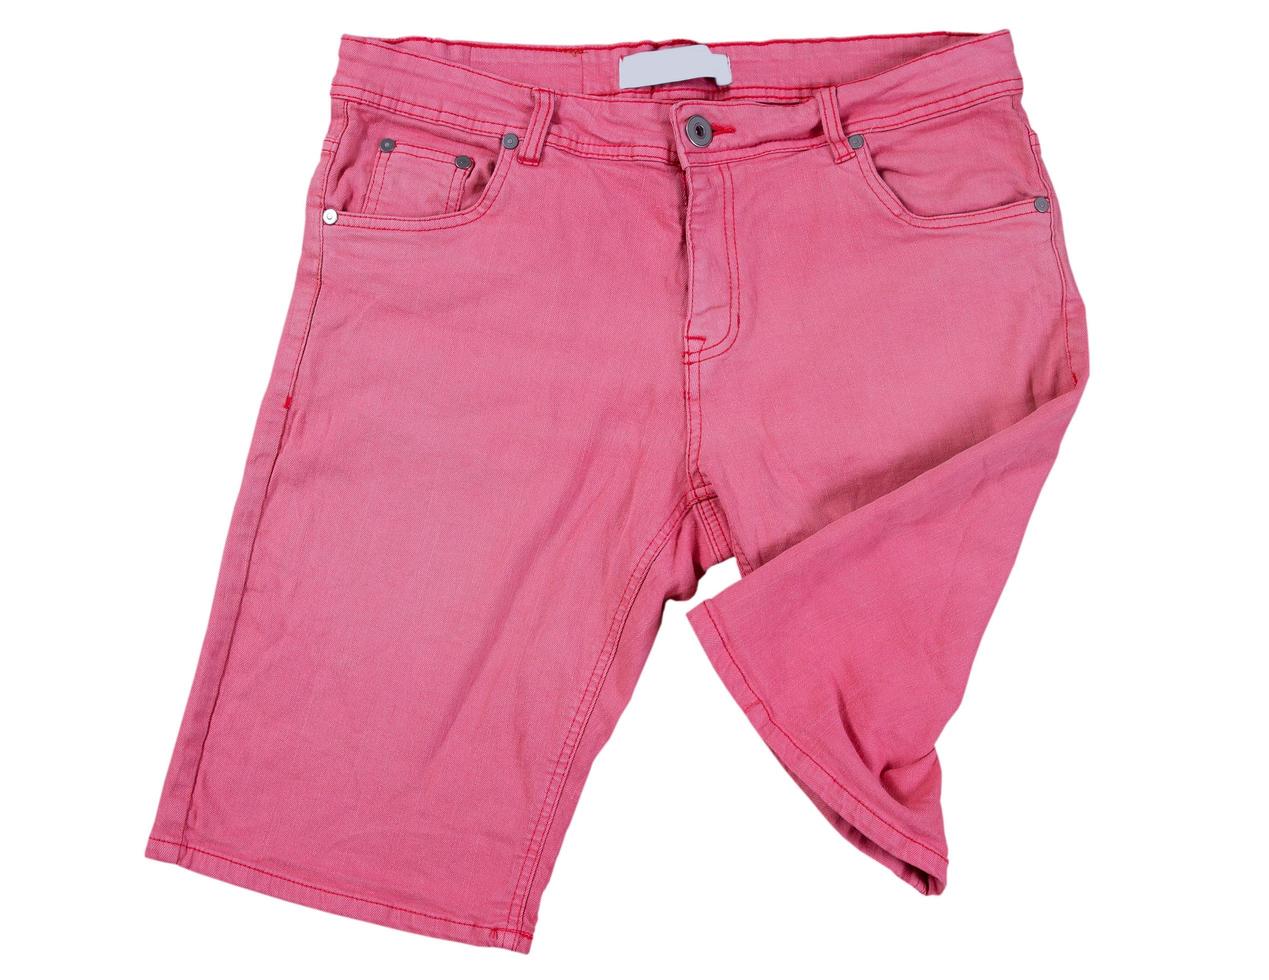 rosa shorts på vit bakgrund, vikta rosa jeansshorts isolerade över vita foto